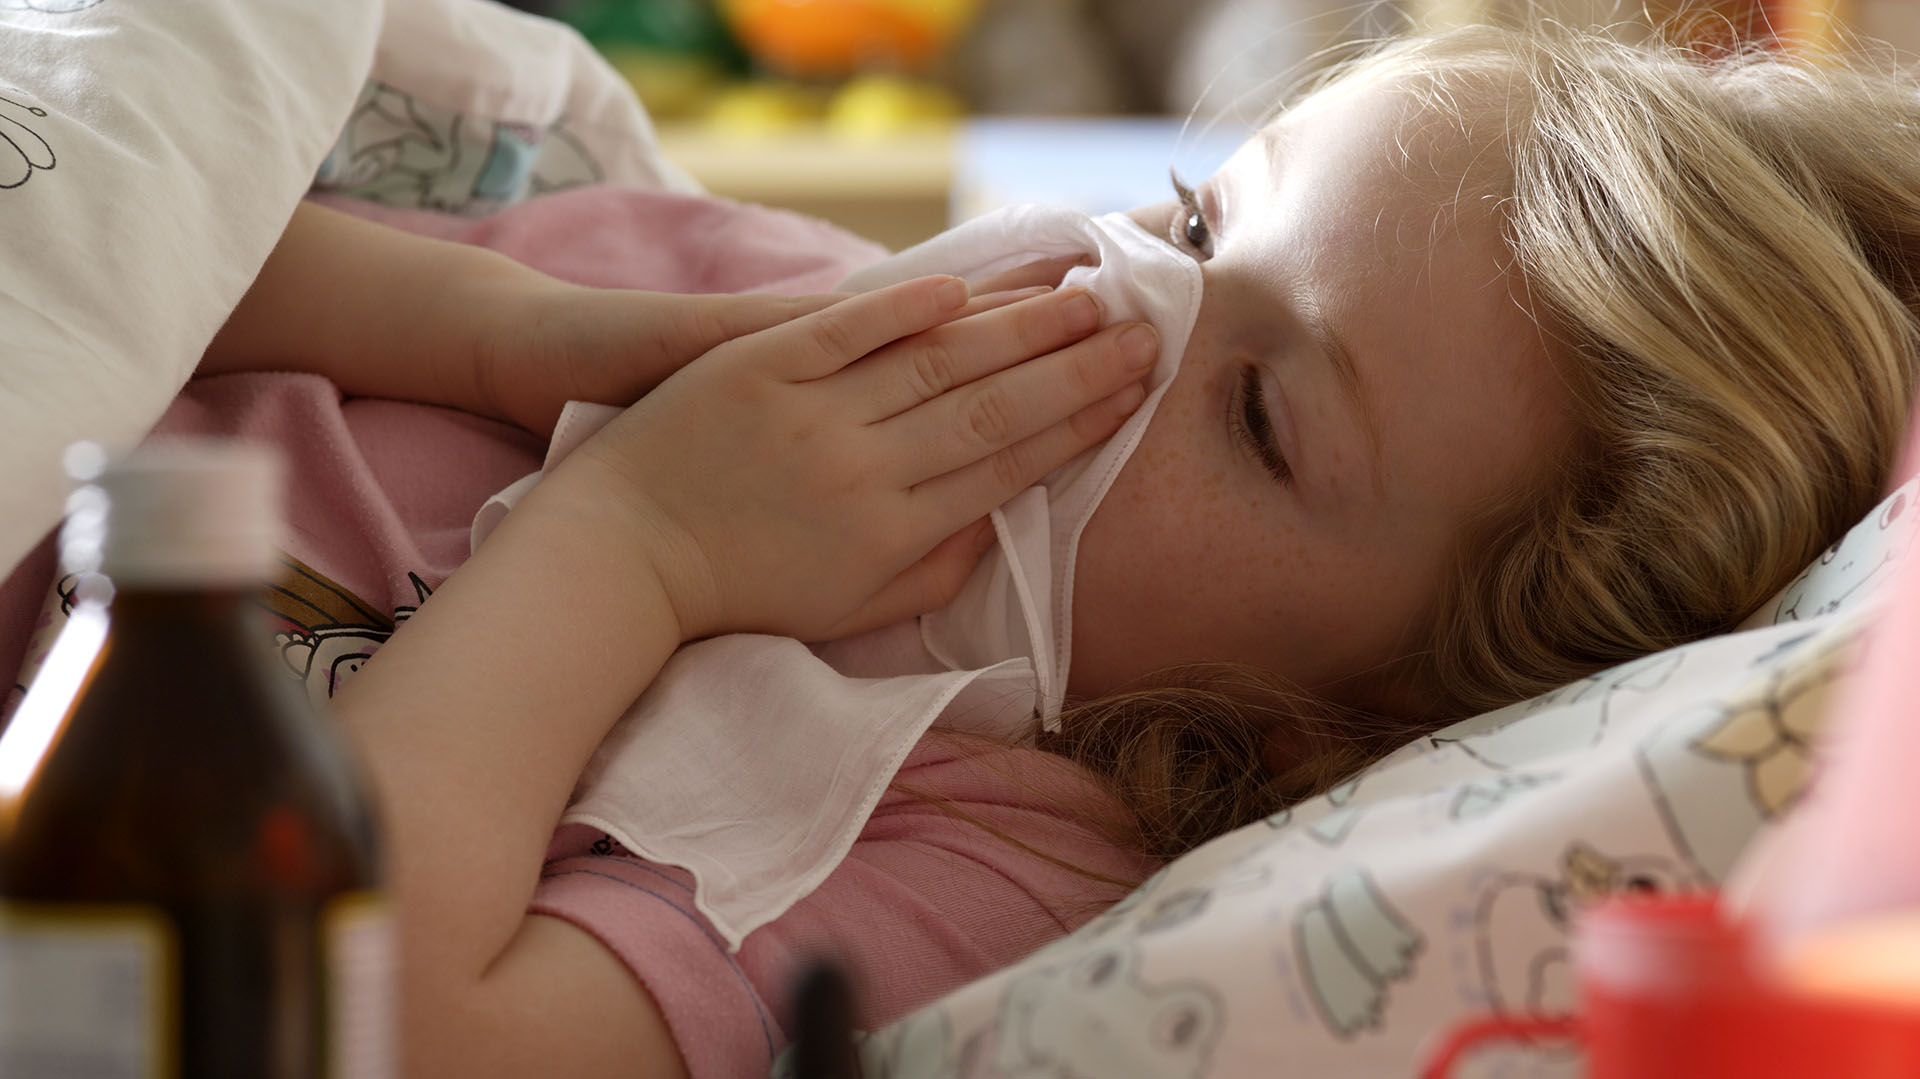 Los menores de 3 meses, prematuros y aquellos con problemas crónicos de salud (como las cardiopatías, las enfermedades pulmonares crónicas o el compromiso de la inmunidad) tienen más riesgo de presentar formas graves de bronquiolitis (Getty Images)